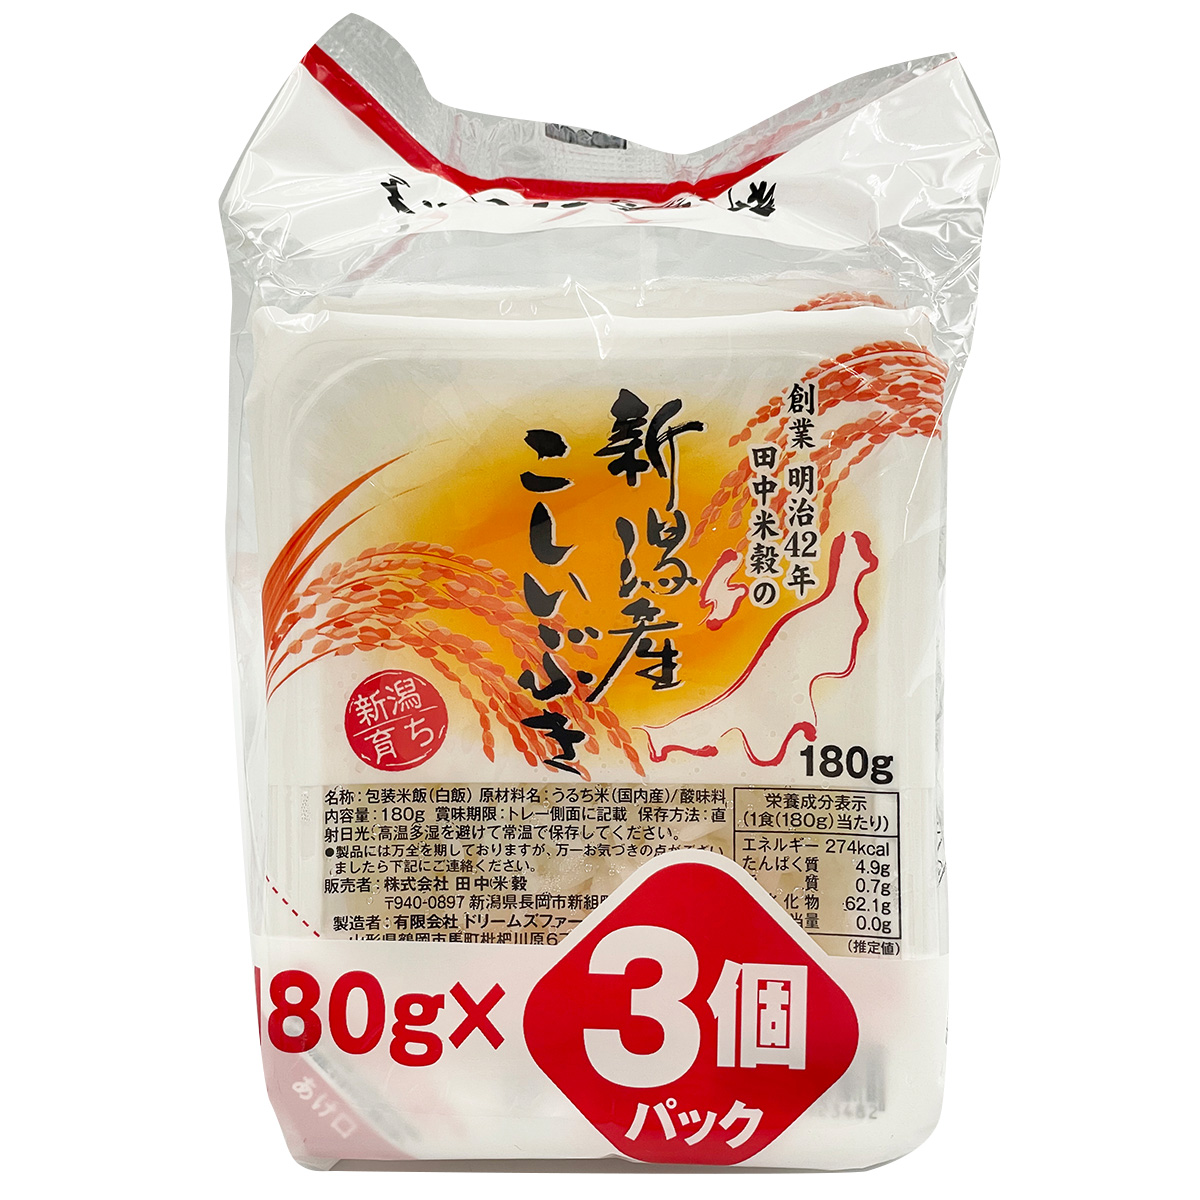 □パックご飯 新潟県産 こしいぶき 180g 3パック入り×16袋 保存食 備蓄 送料無料